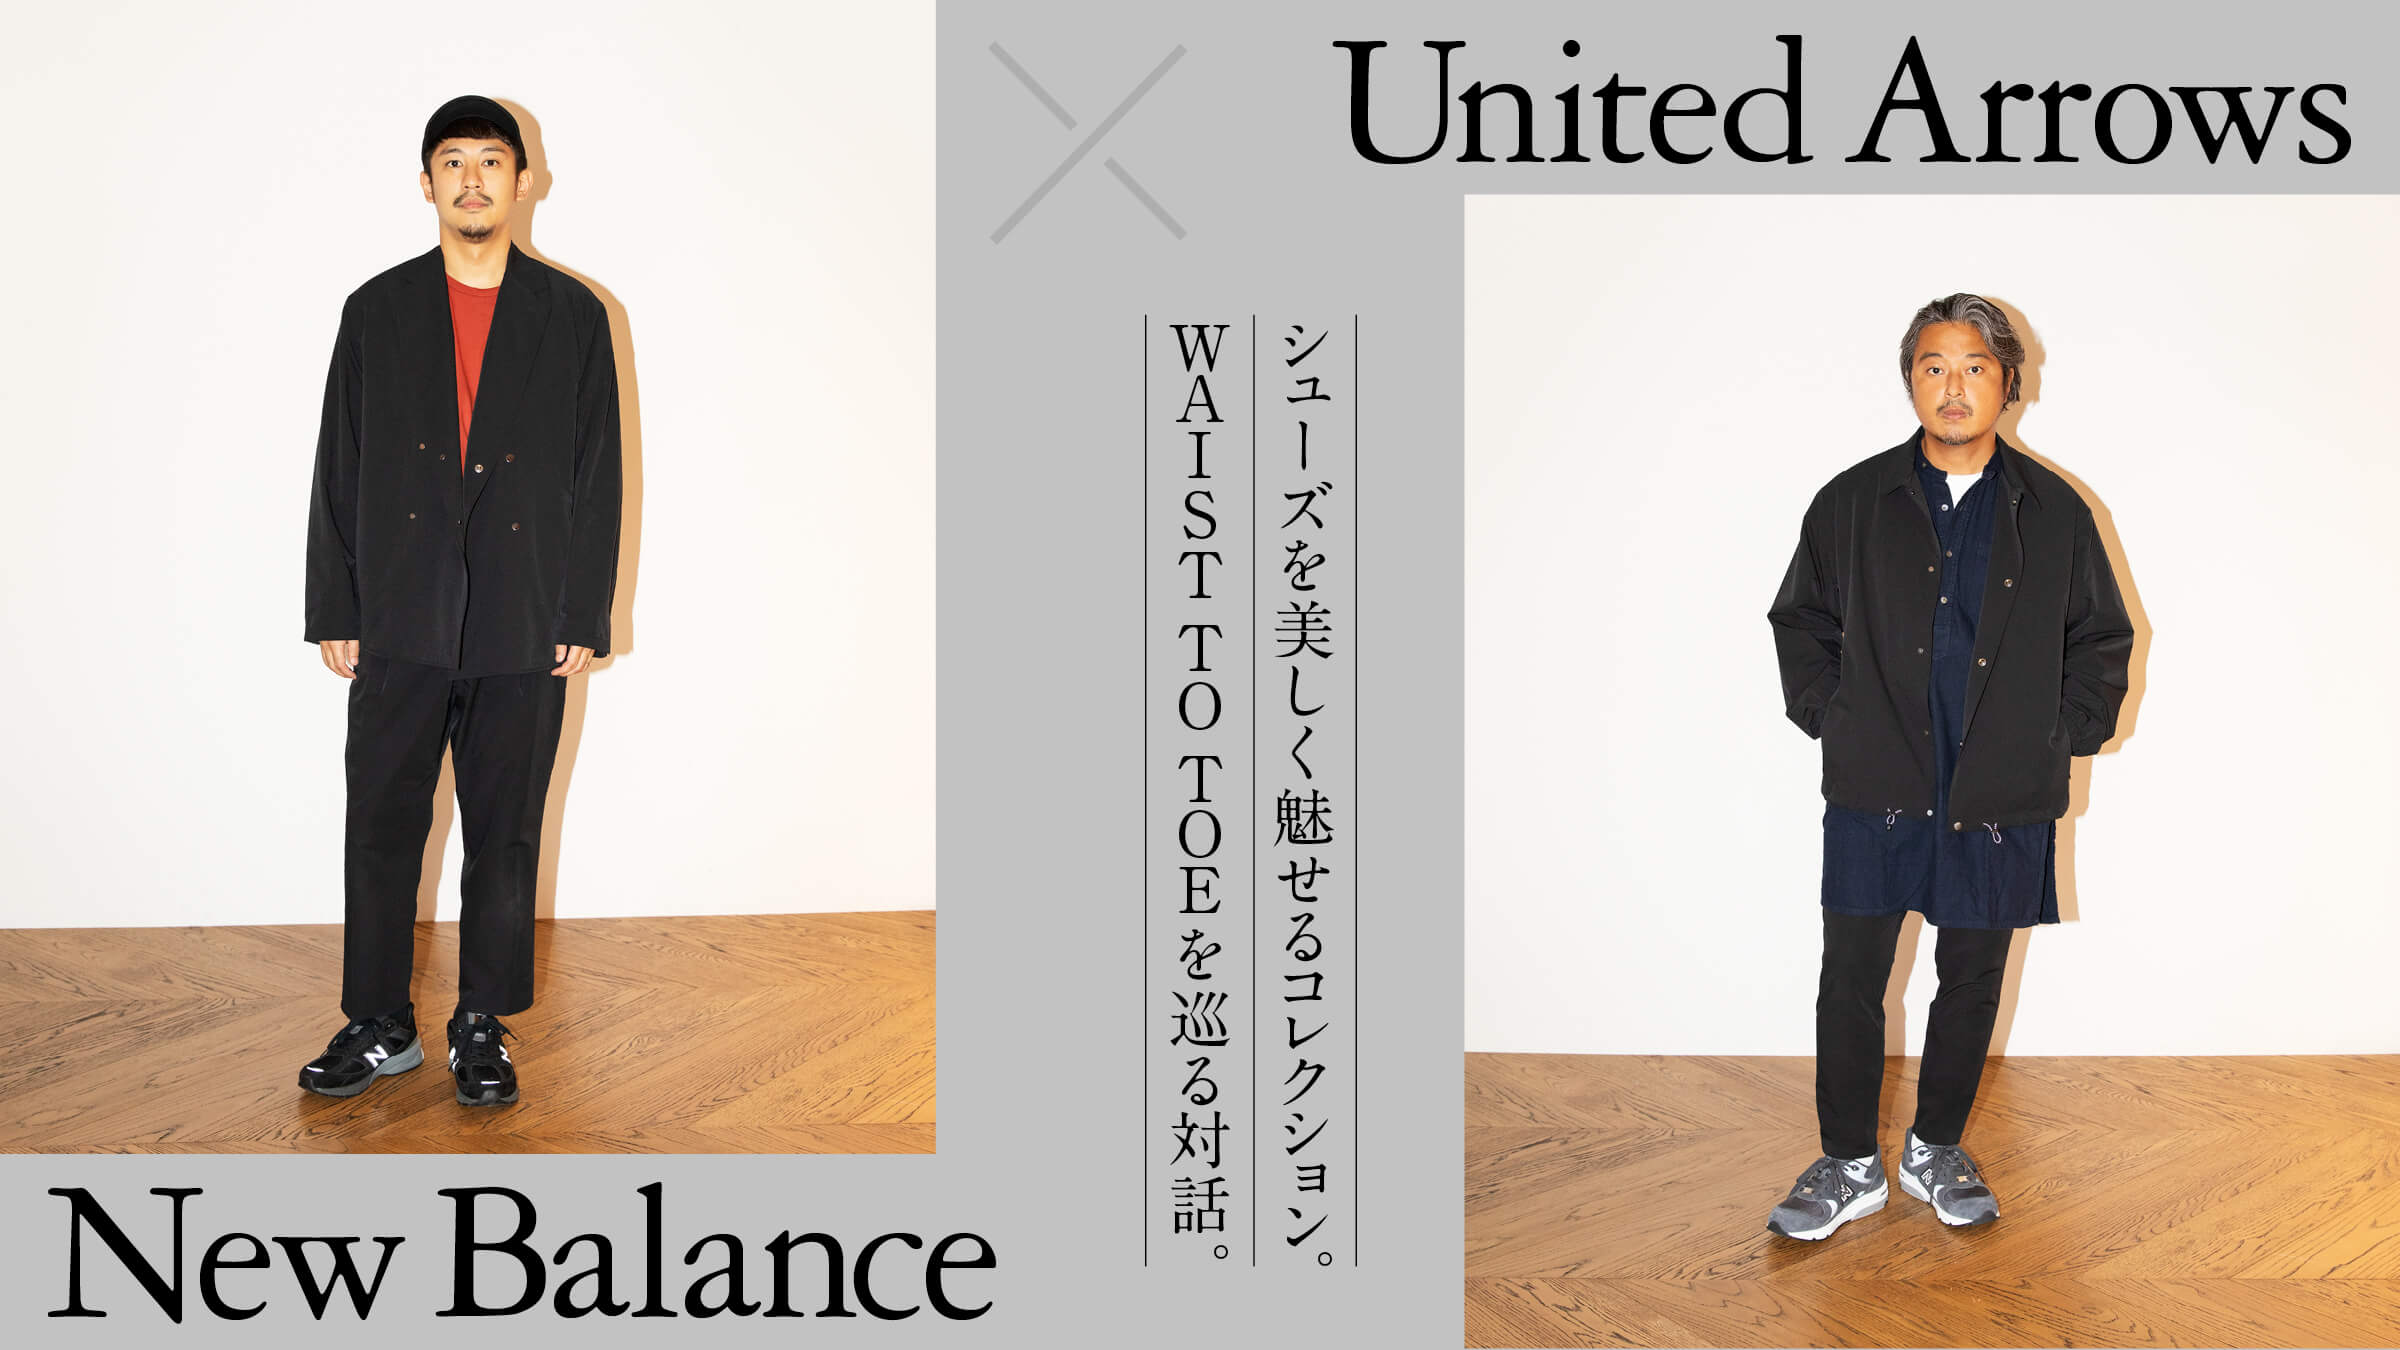 New Balance × United Arrows<br>シューズを美しく魅せるコレクション。 WAIST TO TOEを巡る対話。